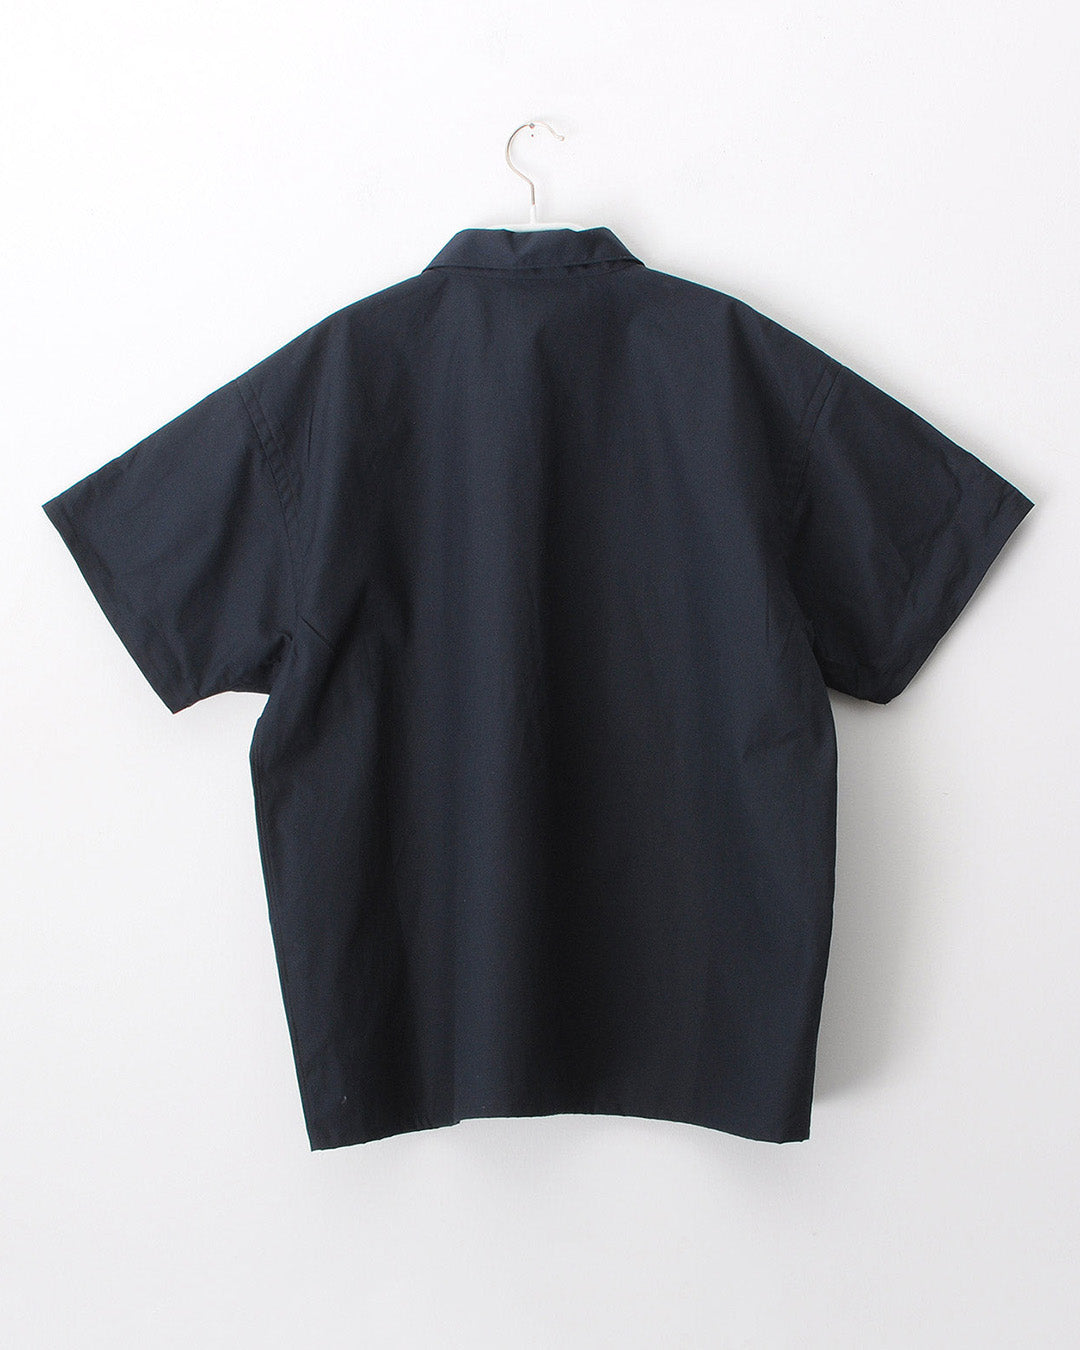 TUKI blouses / oxford / 4色 / size0